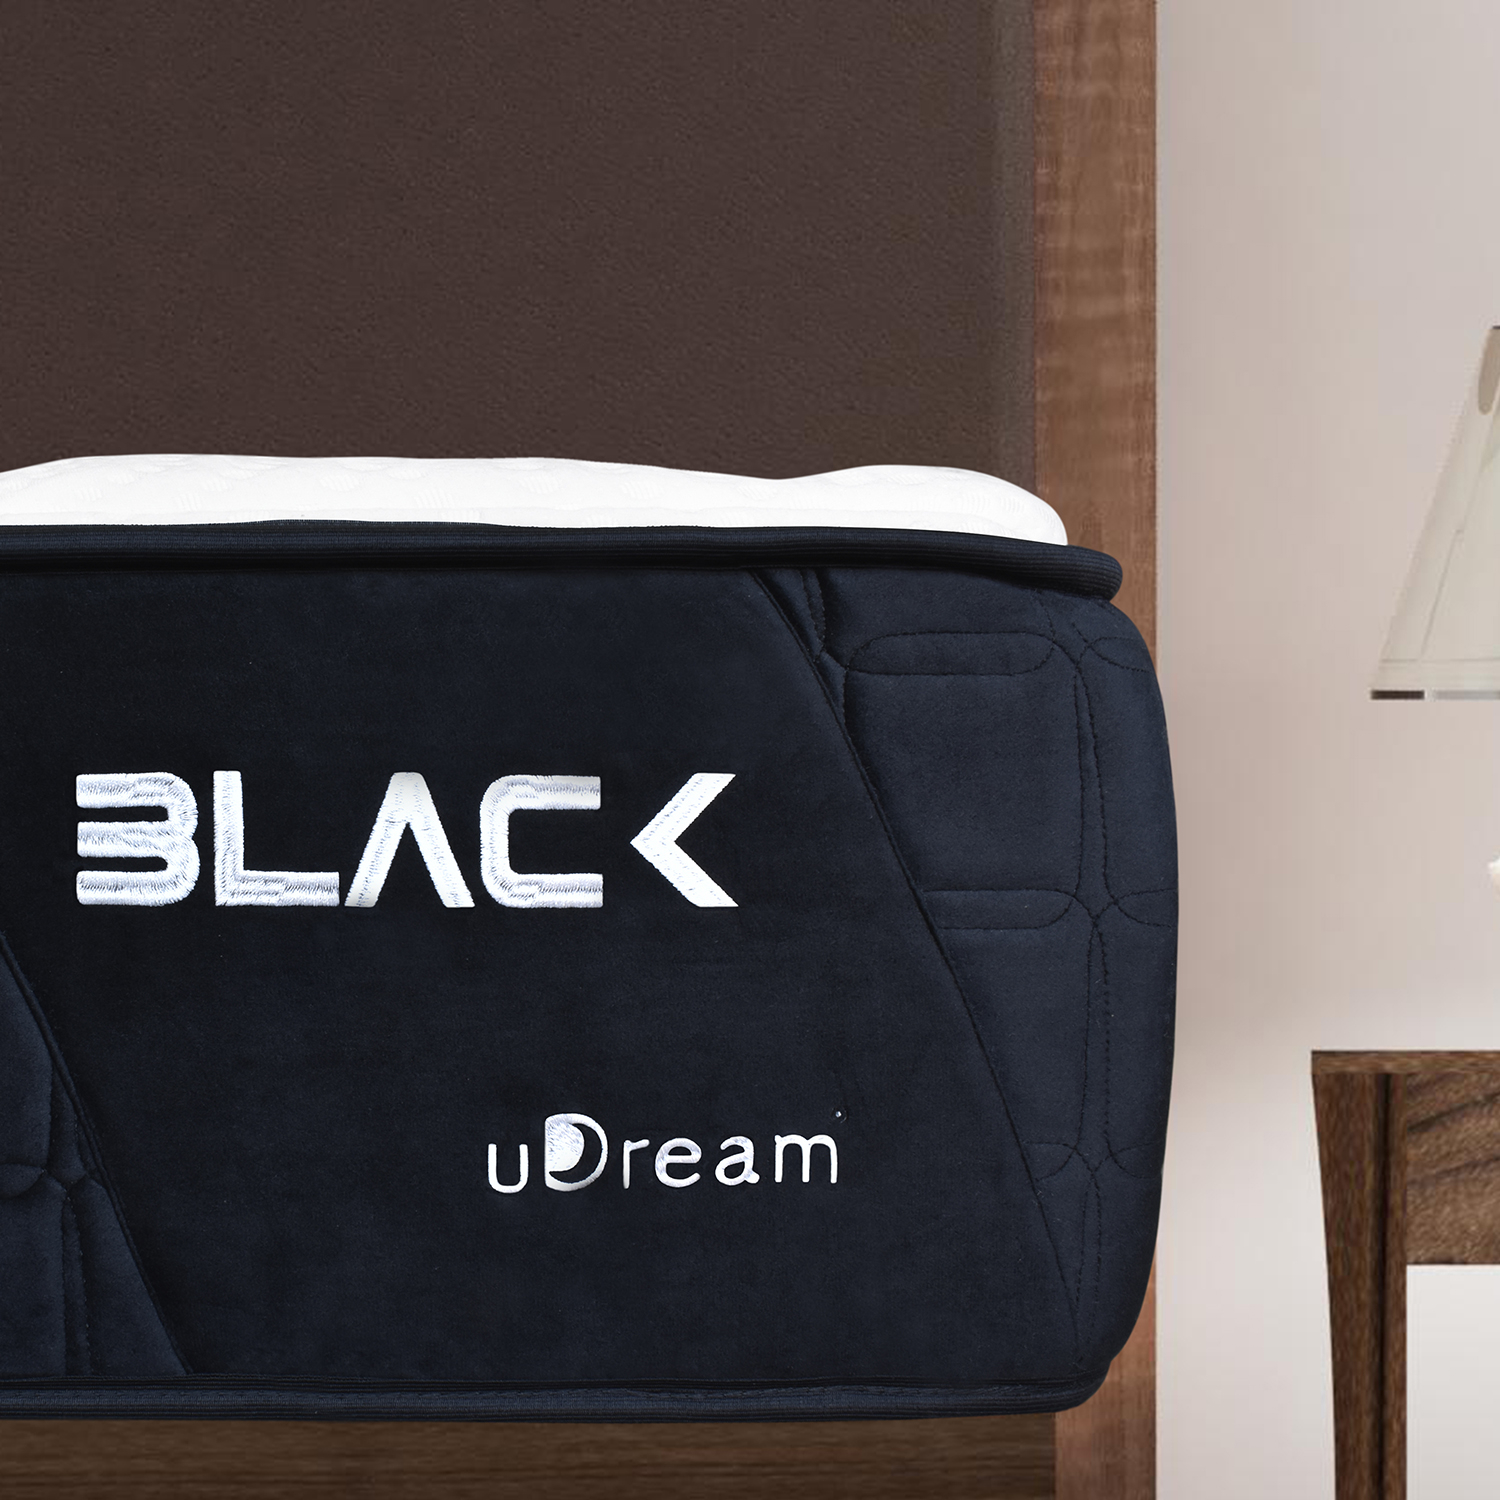 Colchón en caja uDream modelo Black Matrimonial con Memory Foam